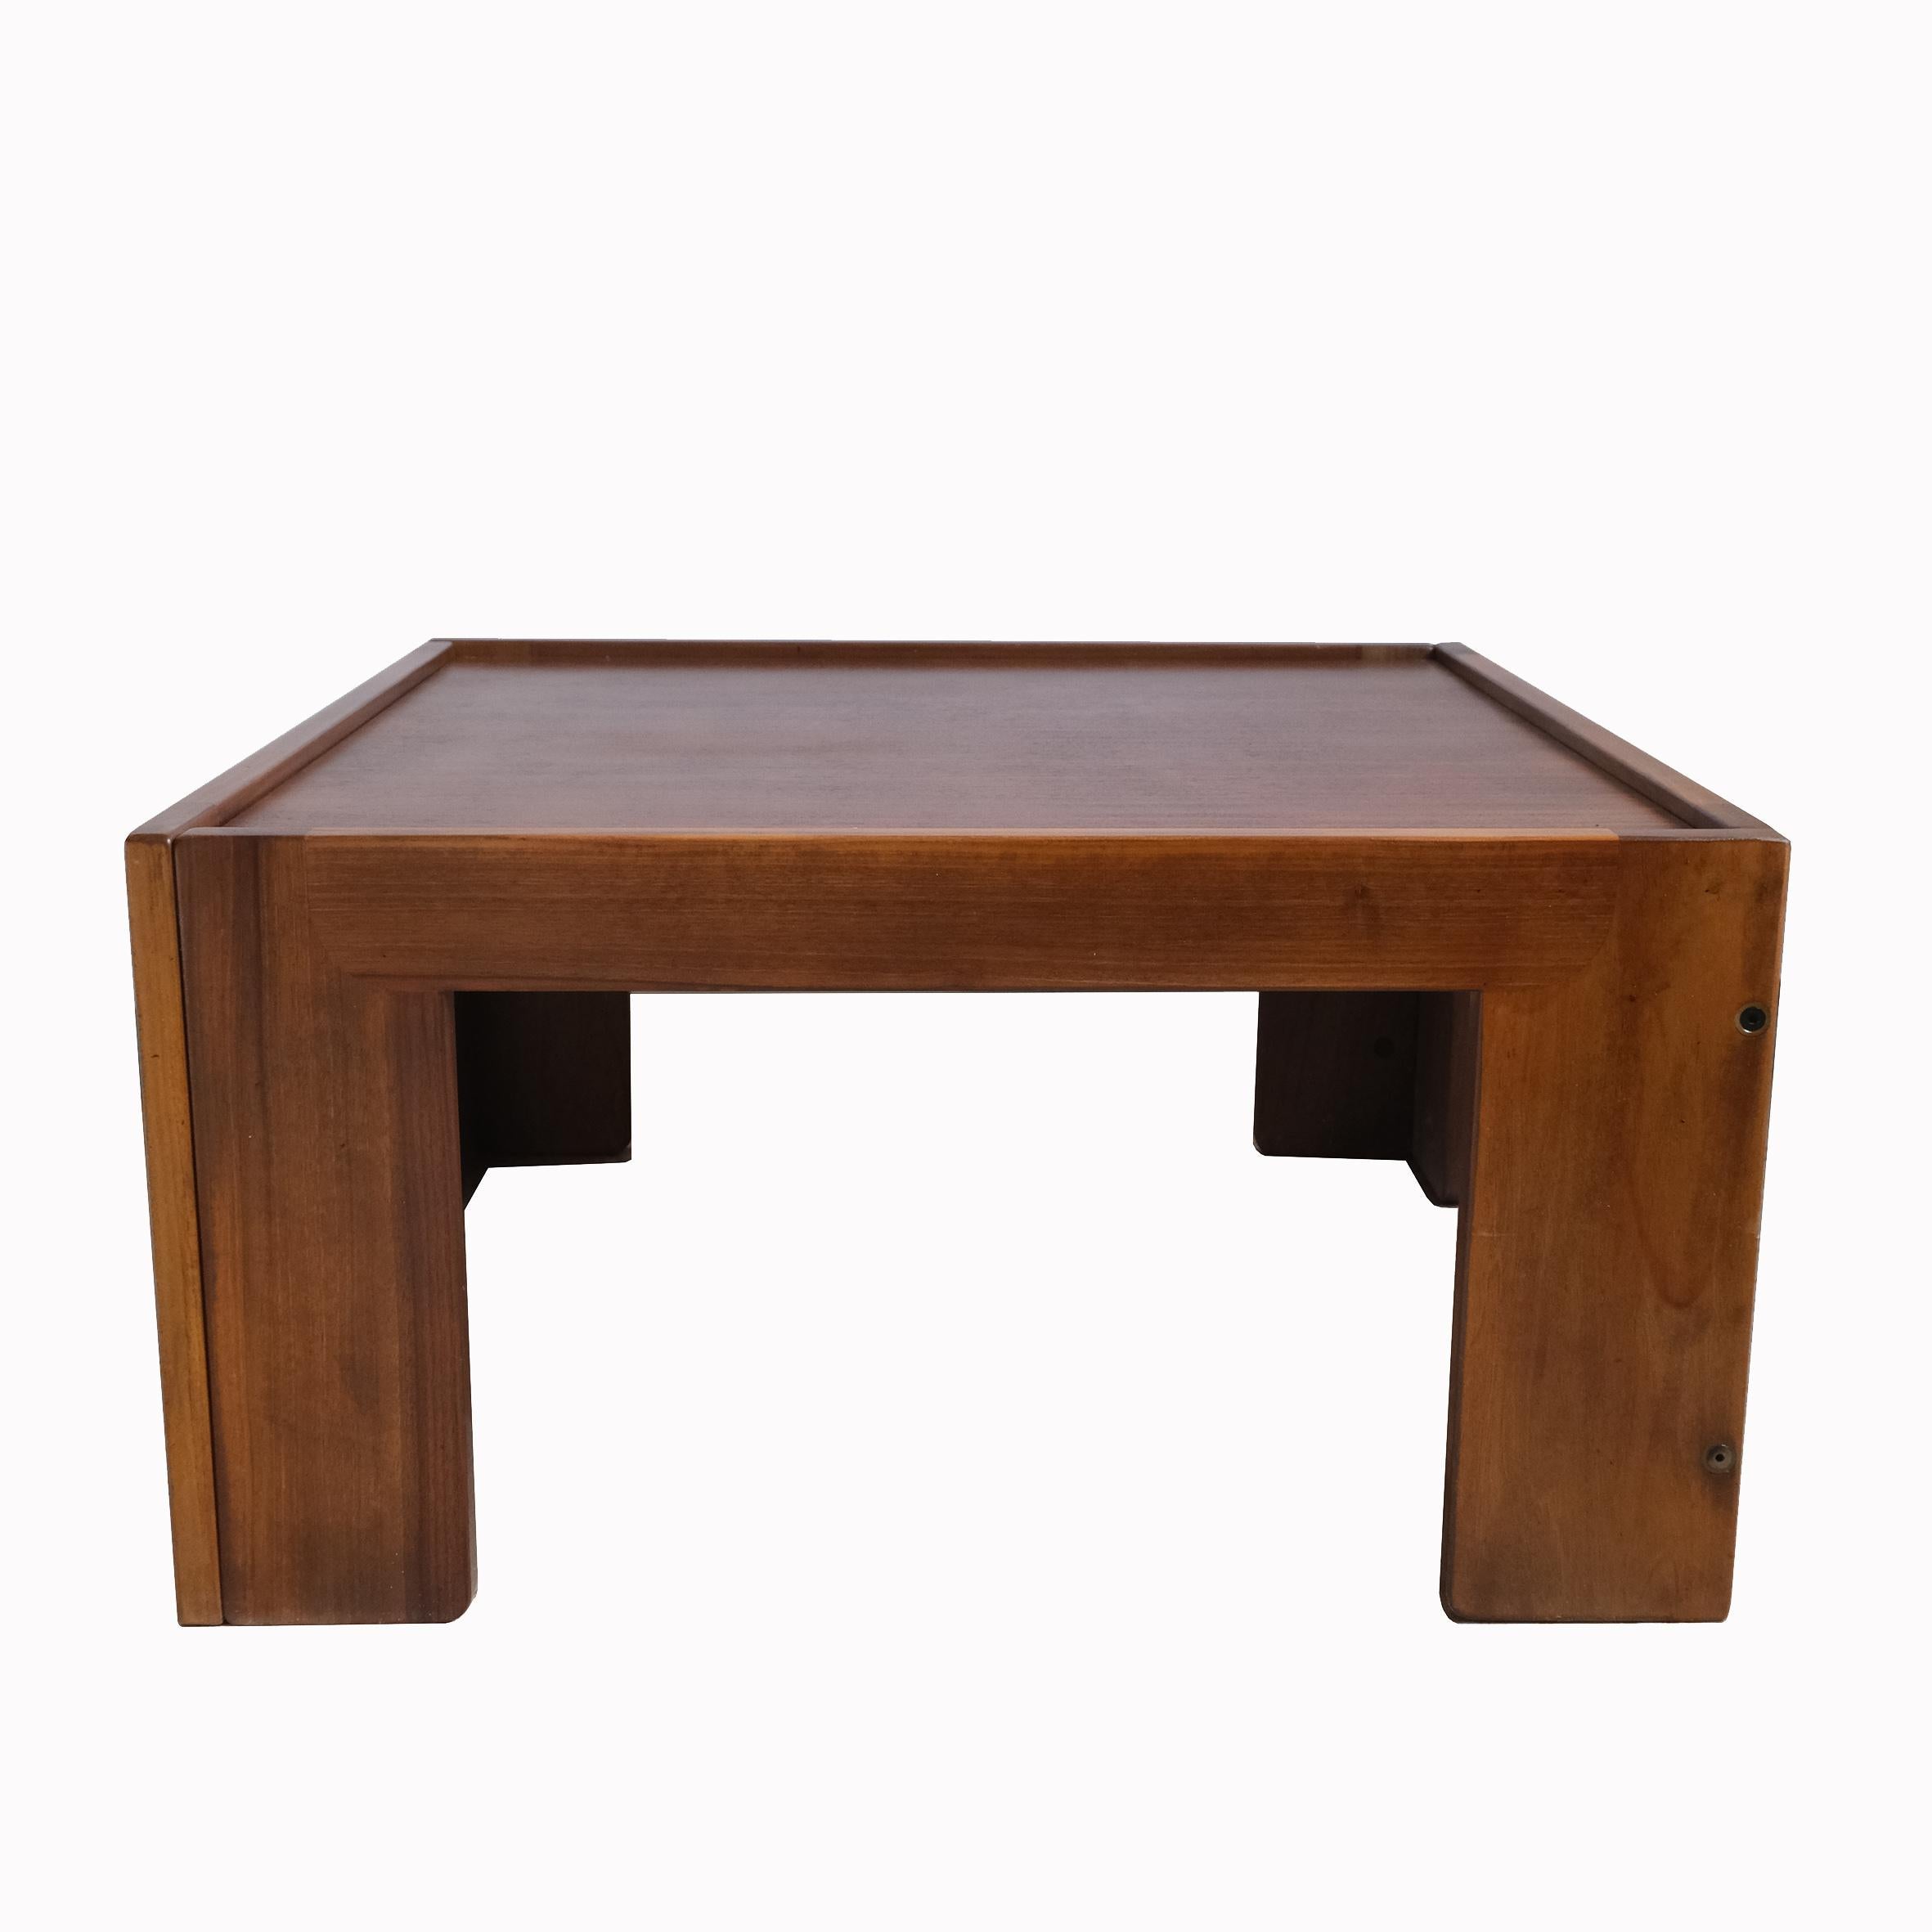 Ein quadratischer, niedriger Tisch aus Nussbaumholz, die Platte ruht auf einem Rahmen, der von vier rechteckigen Füßen getragen wird.
Mit Label 